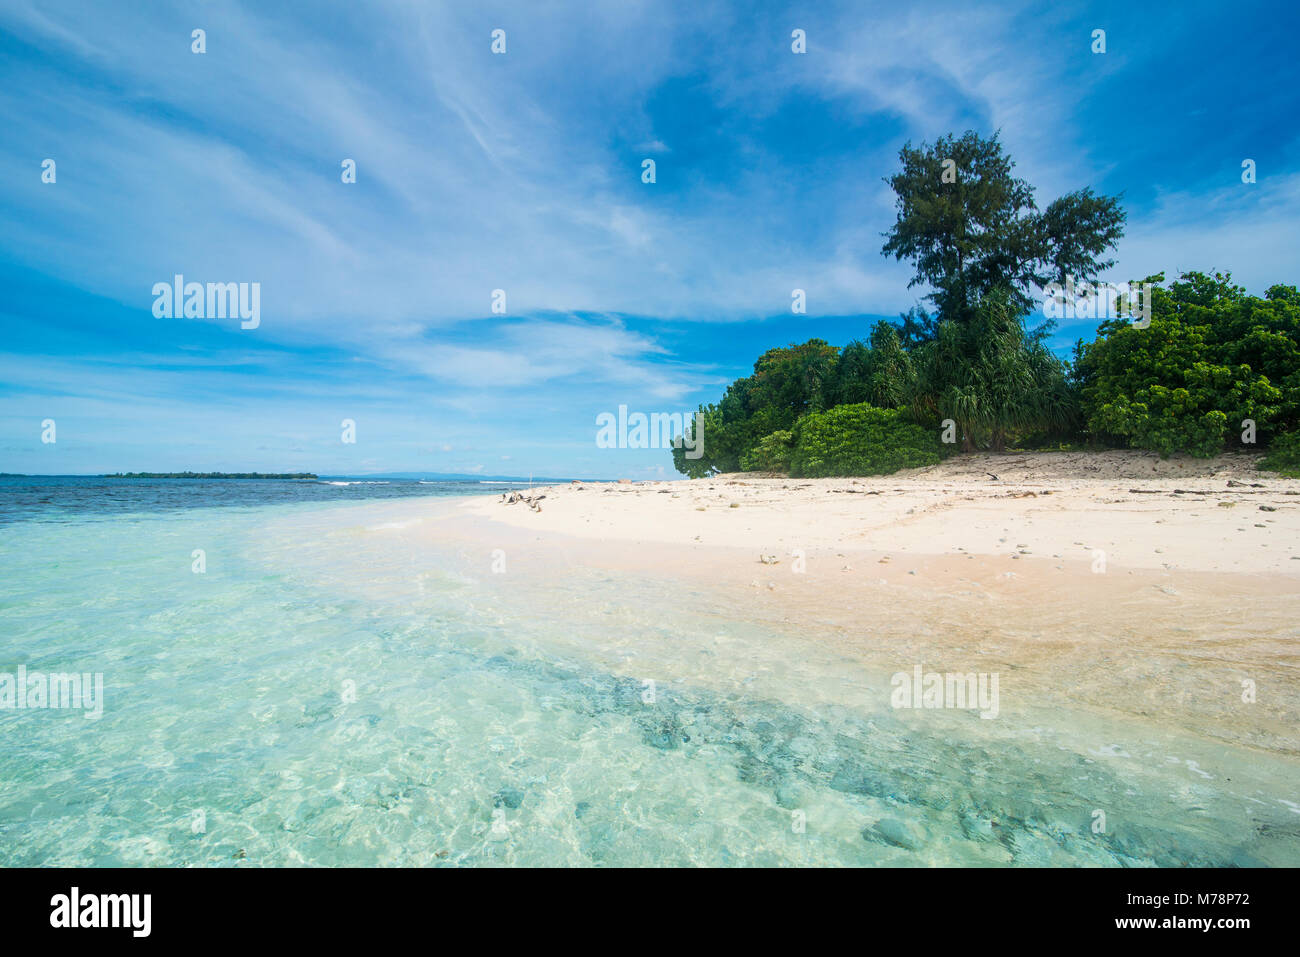 Türkisfarbenes Wasser und weiße Sandstrand auf der herrlichen Insel Ral vor der Küste von Kavieng, Neuirland, Papua-Neuguinea, Pazifik Stockfoto